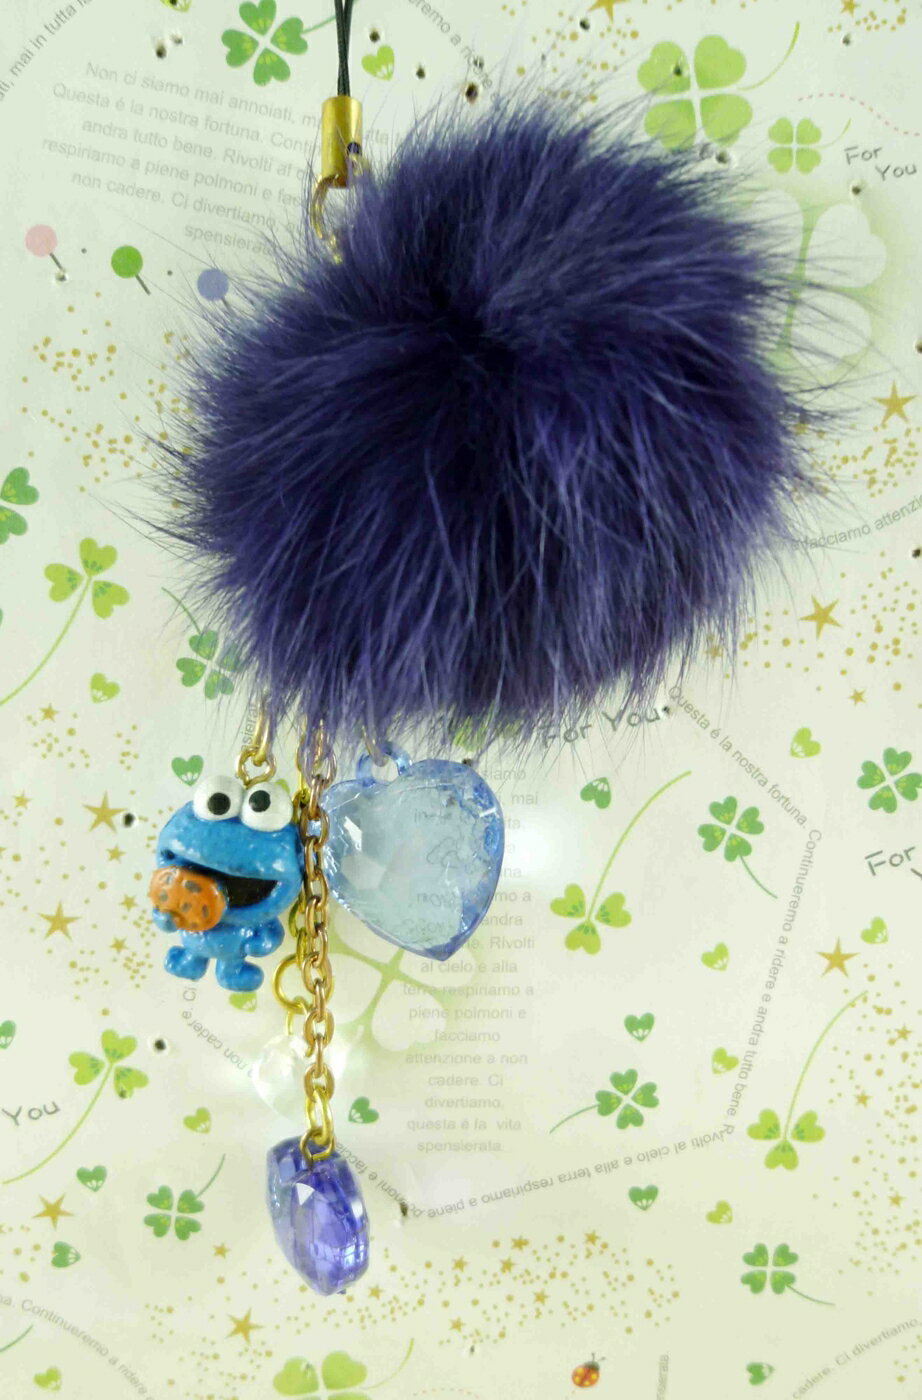 【震撼精品百貨】Sesame Street 芝麻街 手機吊飾-藍色 震撼日式精品百貨